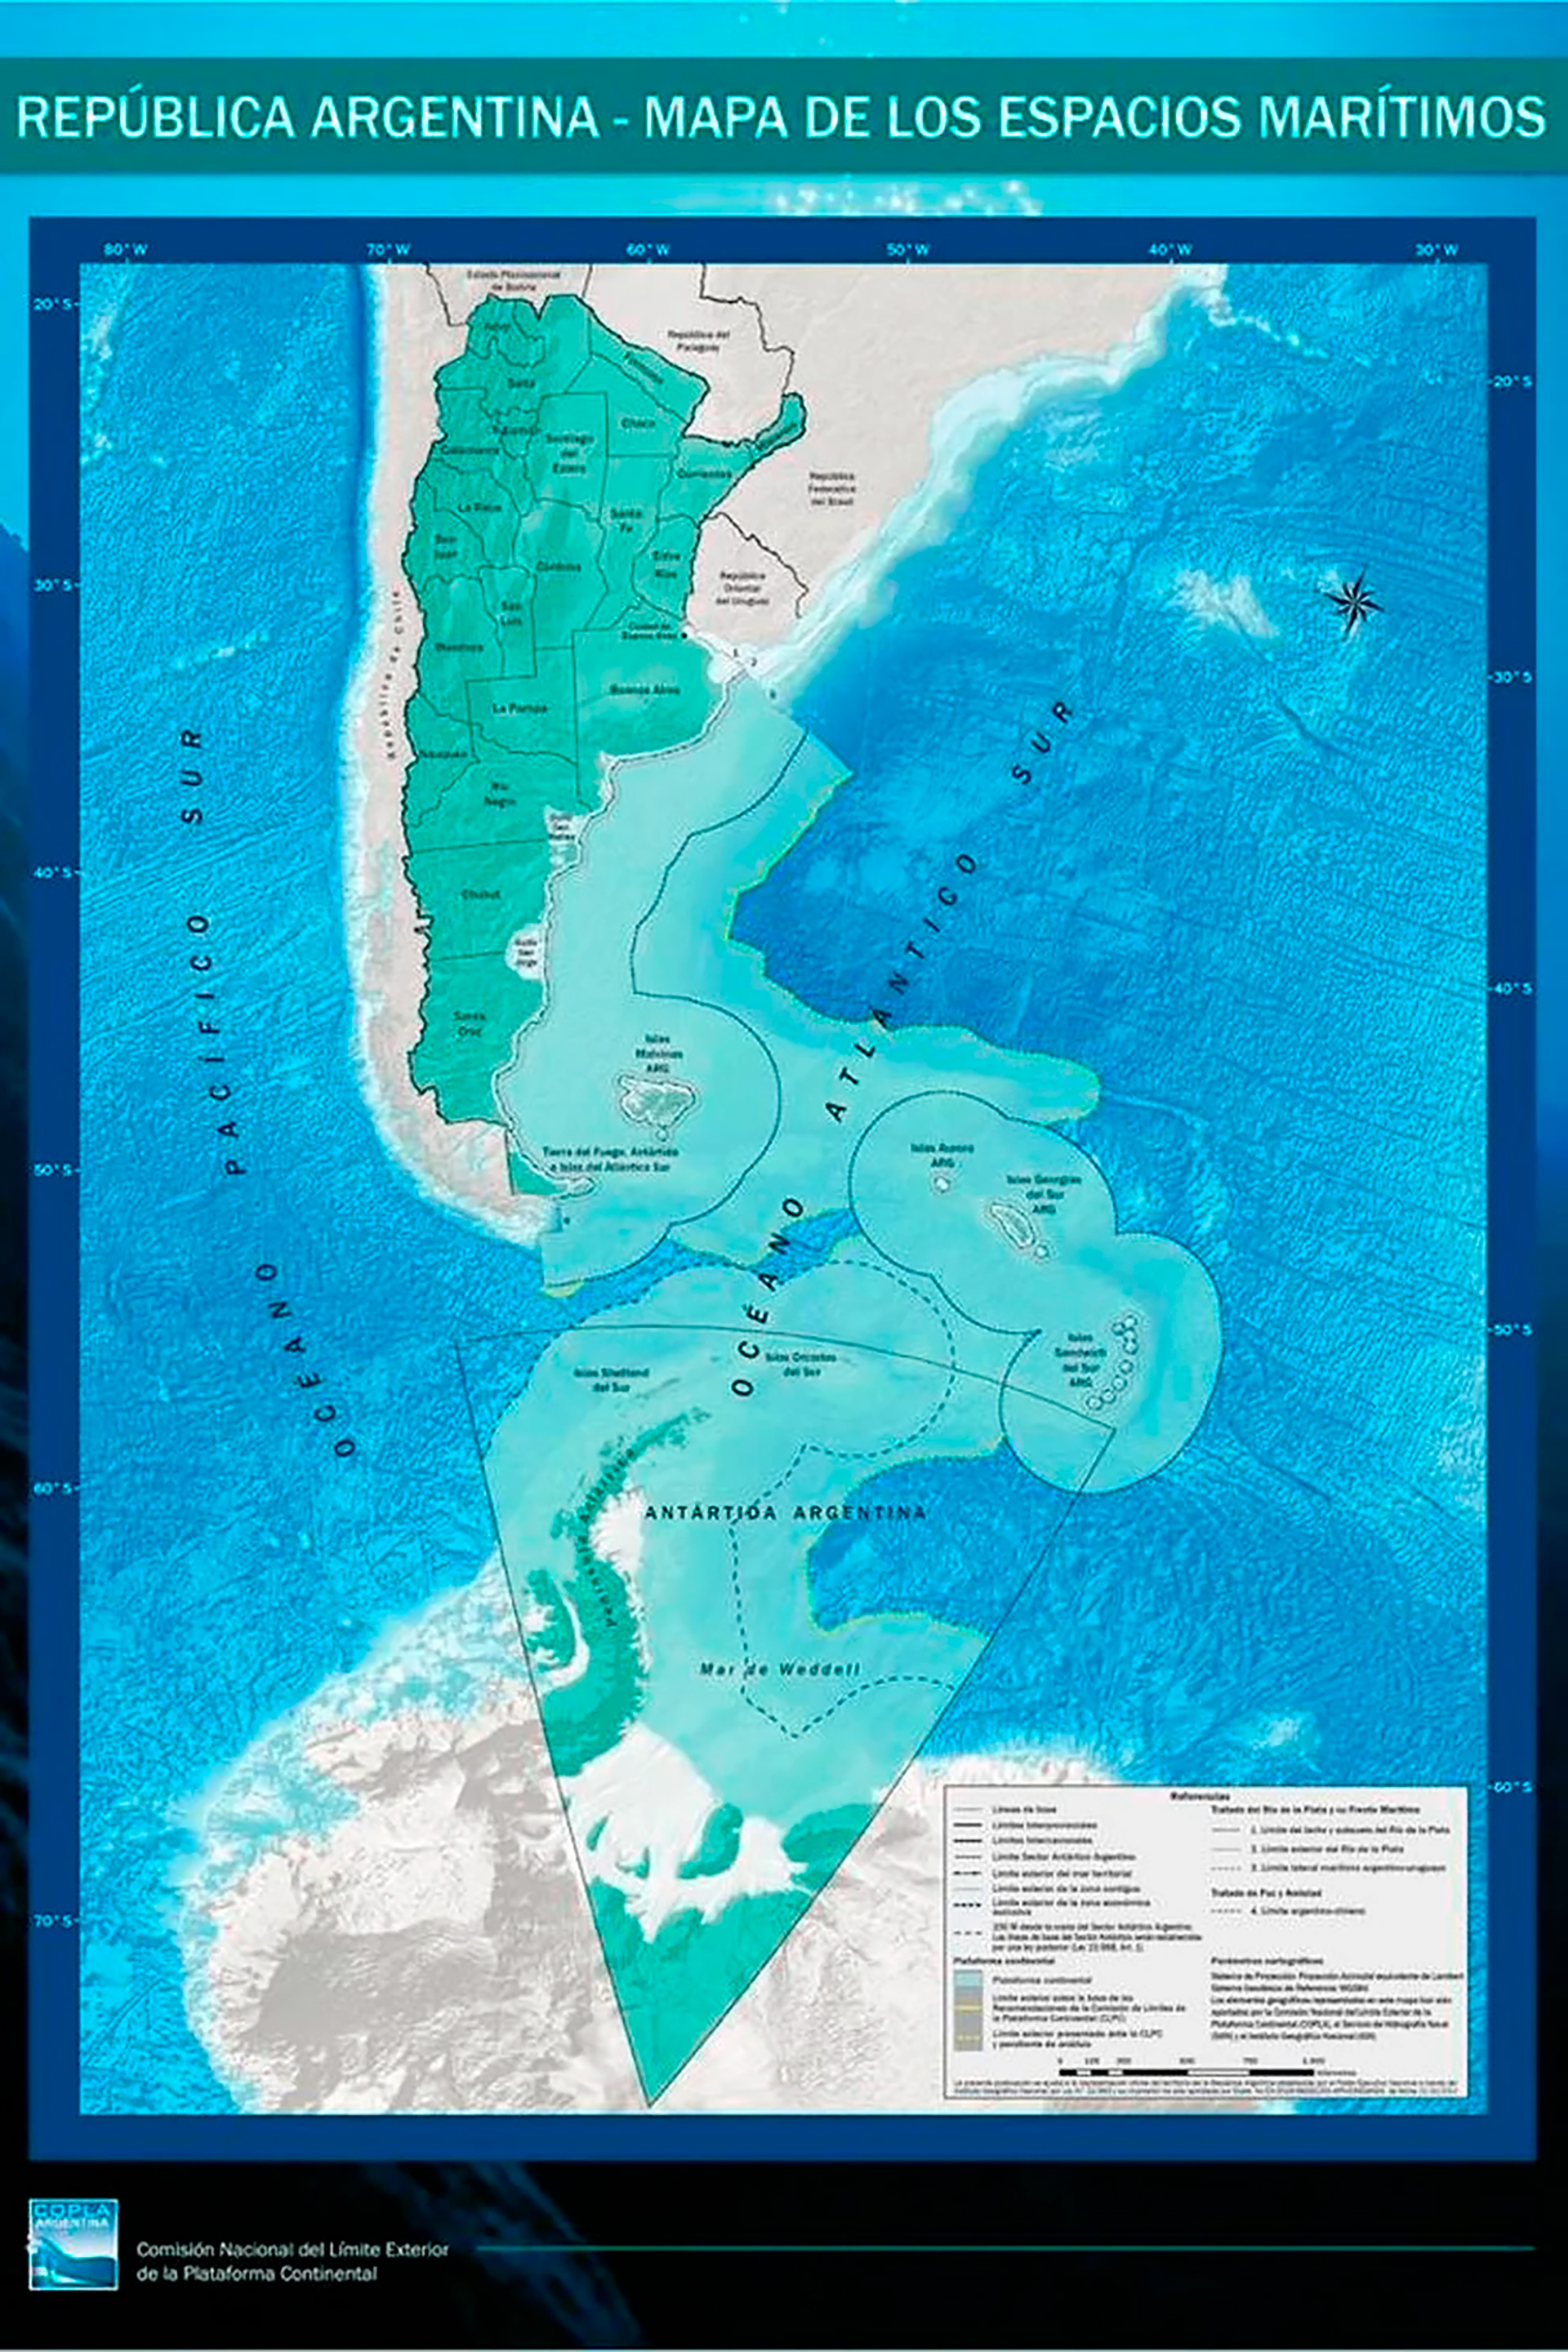 El nuevo mapa de la República Argentina presentado por Cancillería y sobre el cual se proyectan las tareas específicas de defensa nacional